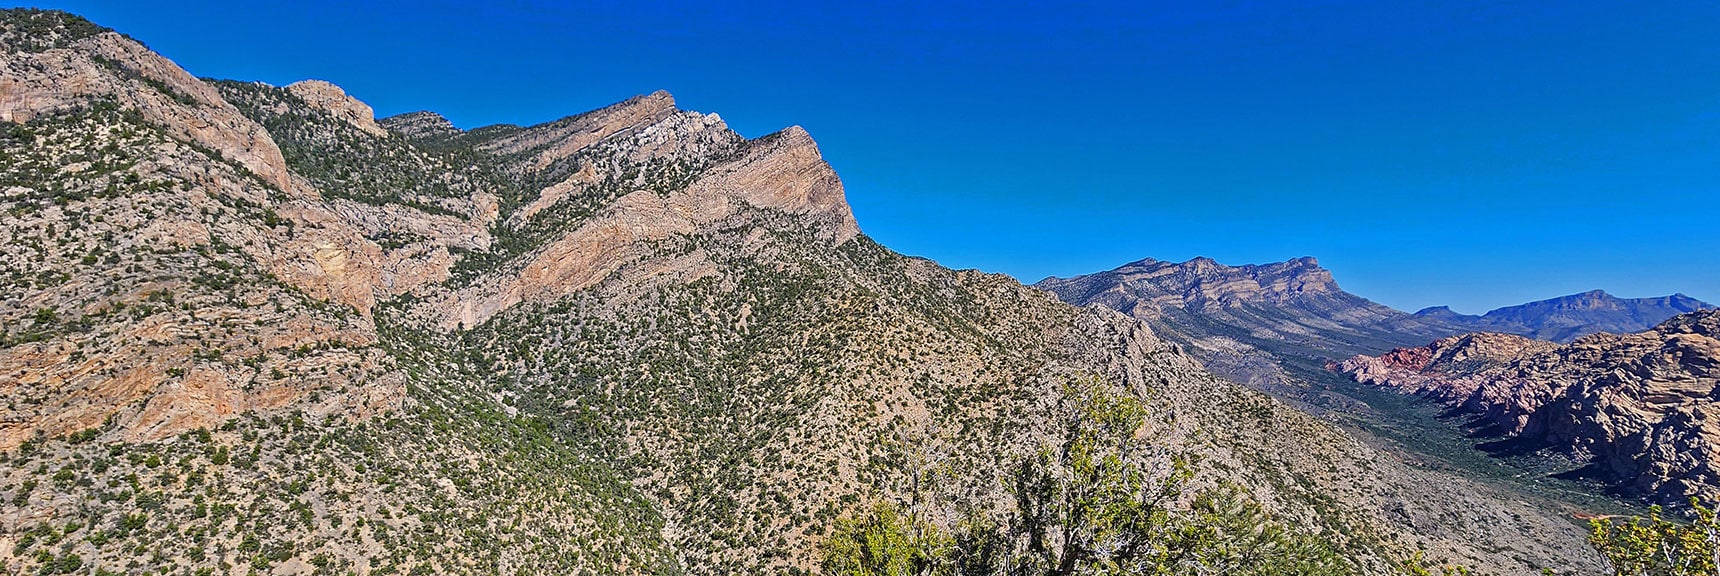 Wilson Ridgeline North of Switchback Spring Canyon | Switchback Spring Ridge | Red Rock Canyon, Nevada